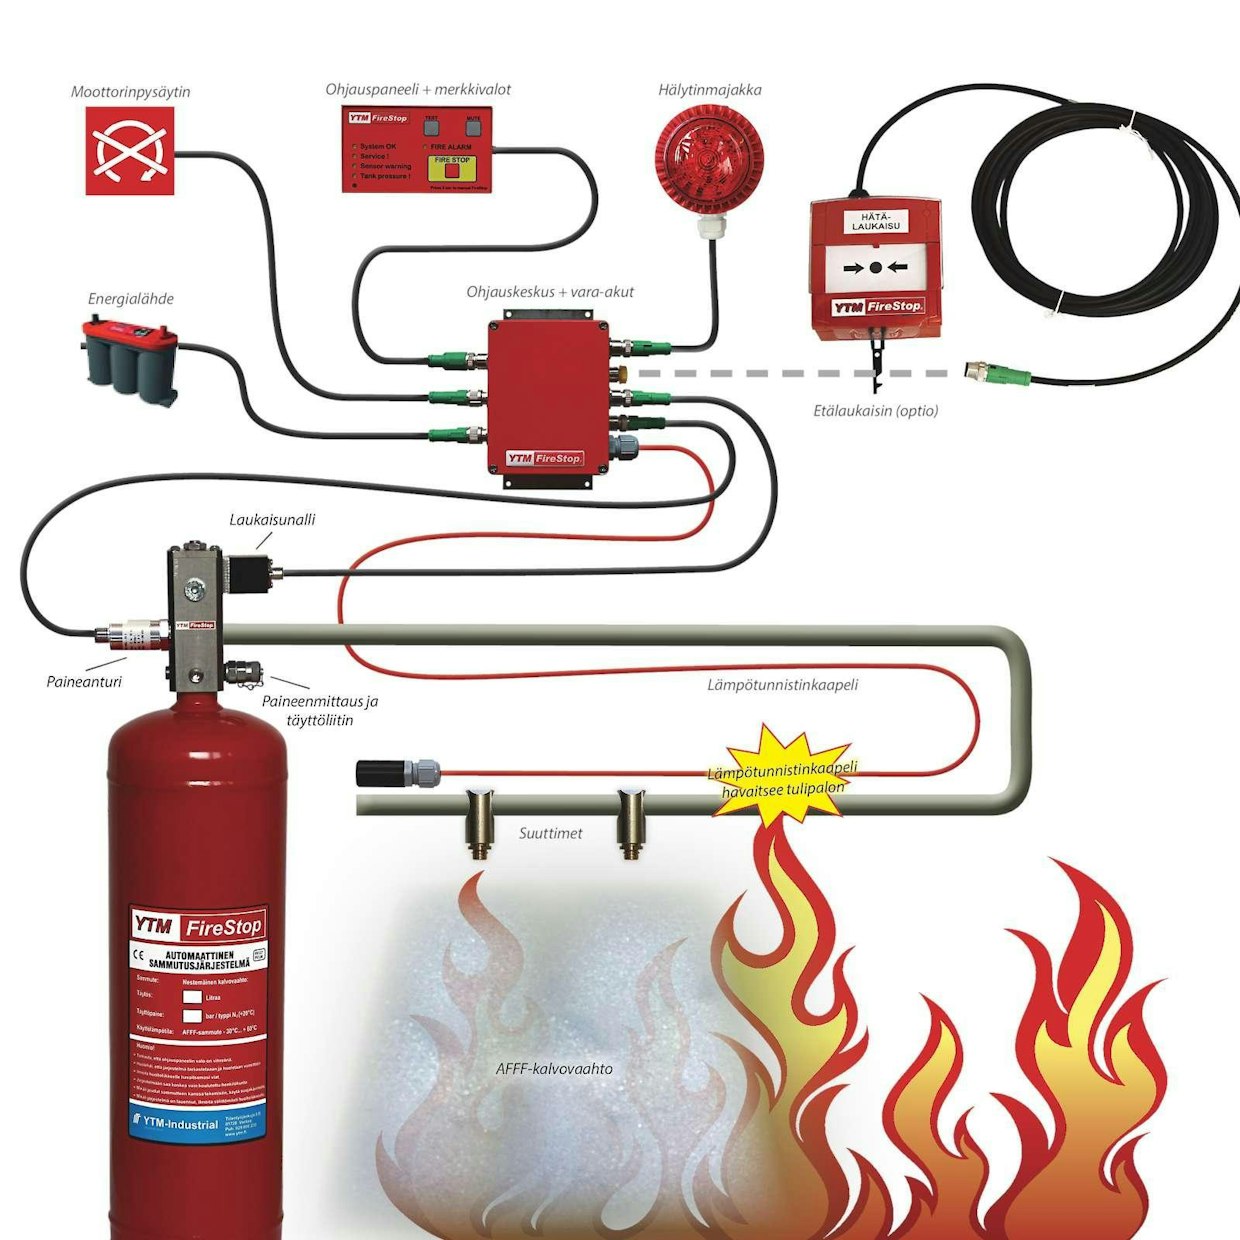 Kuvassa YTM FireStop-palosammutusjärjestelmän toimintakaavio. Lämpötunnistinkaapeli havaitsee tulipalon ja laukaisee sammutuslaitteiston toimimaan. Markkinoilla on toista kymmentä valmistajaa, jotka tarjoavat aktiivisesti toimivaa ja työkonekäyttöön hyväksyttyä sammutinjärjestelmää – joten valinnanvaraa on.